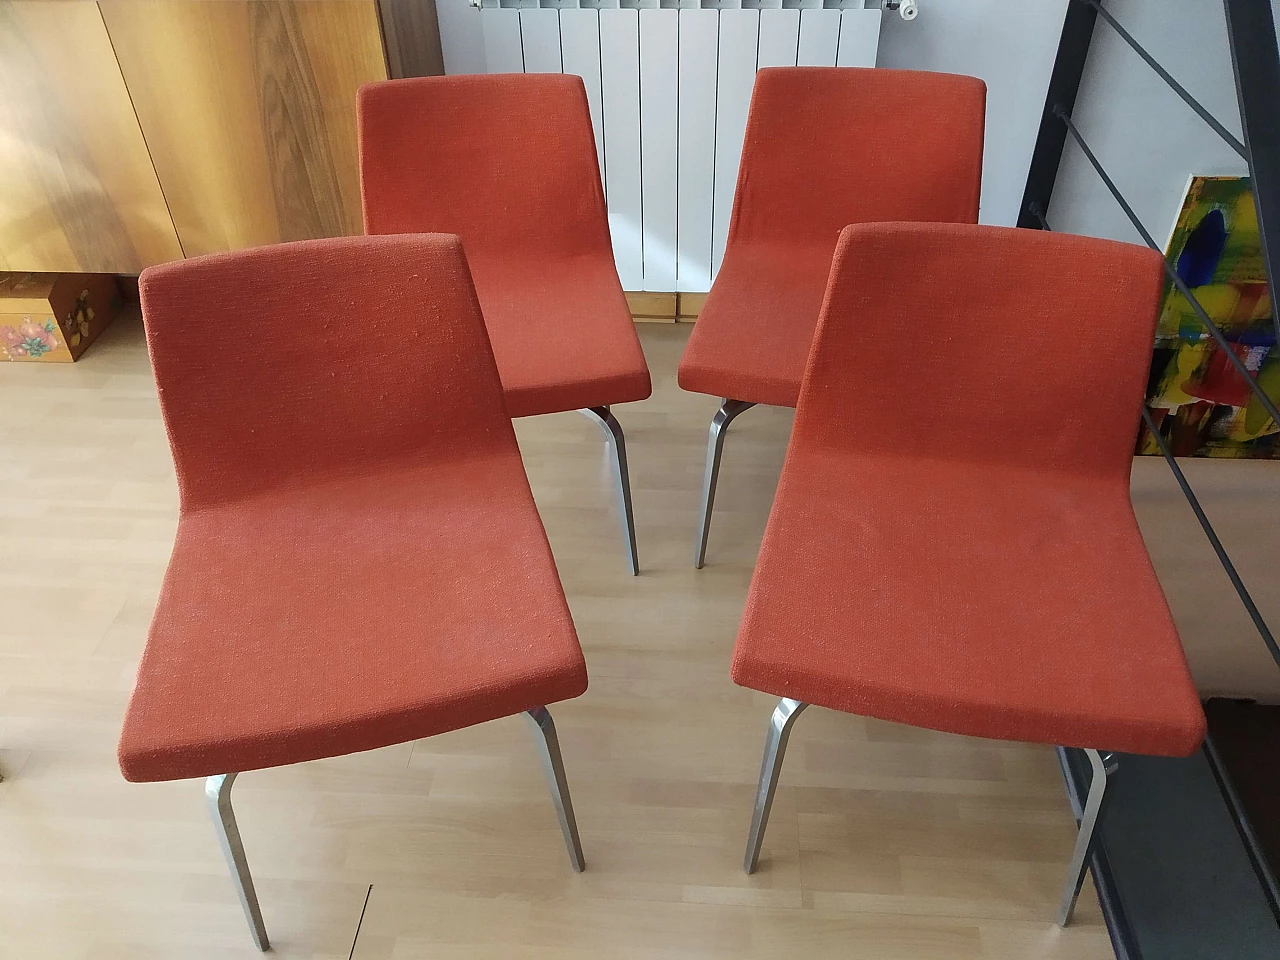 4 Hella Chairs by Mauro Lipparini for MisuraEmme 1477134